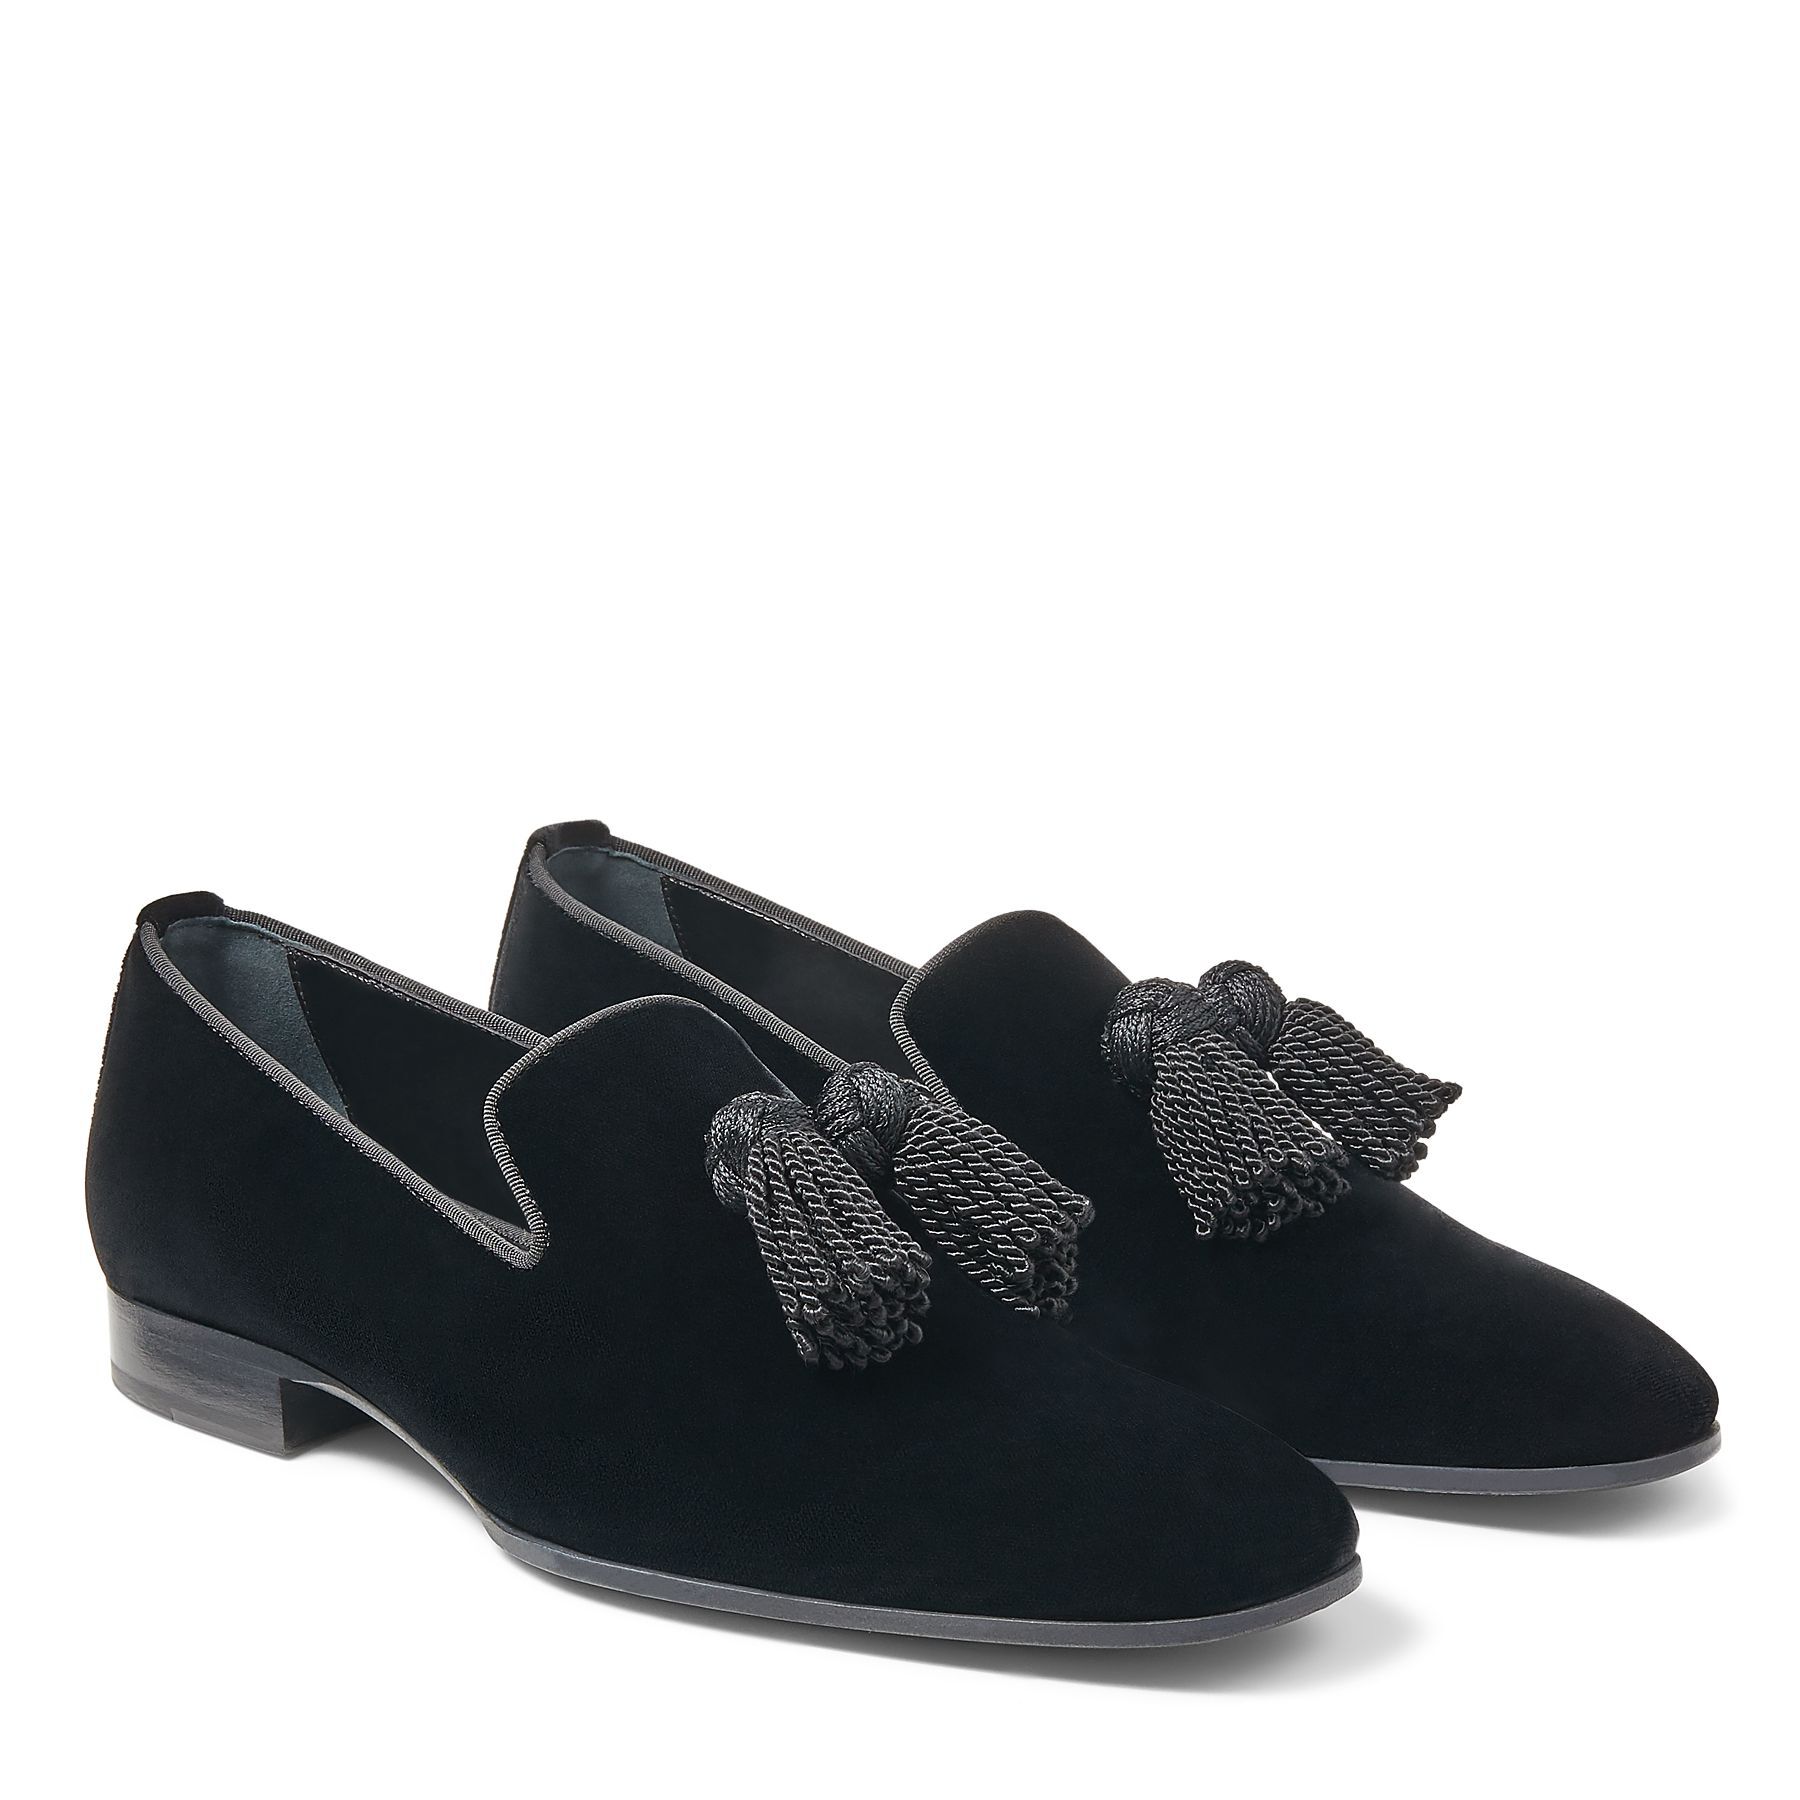 Black Velvet Slip-On Shoes with Tassel | FOXLEY/M| Autumn-Winter 2020 ...